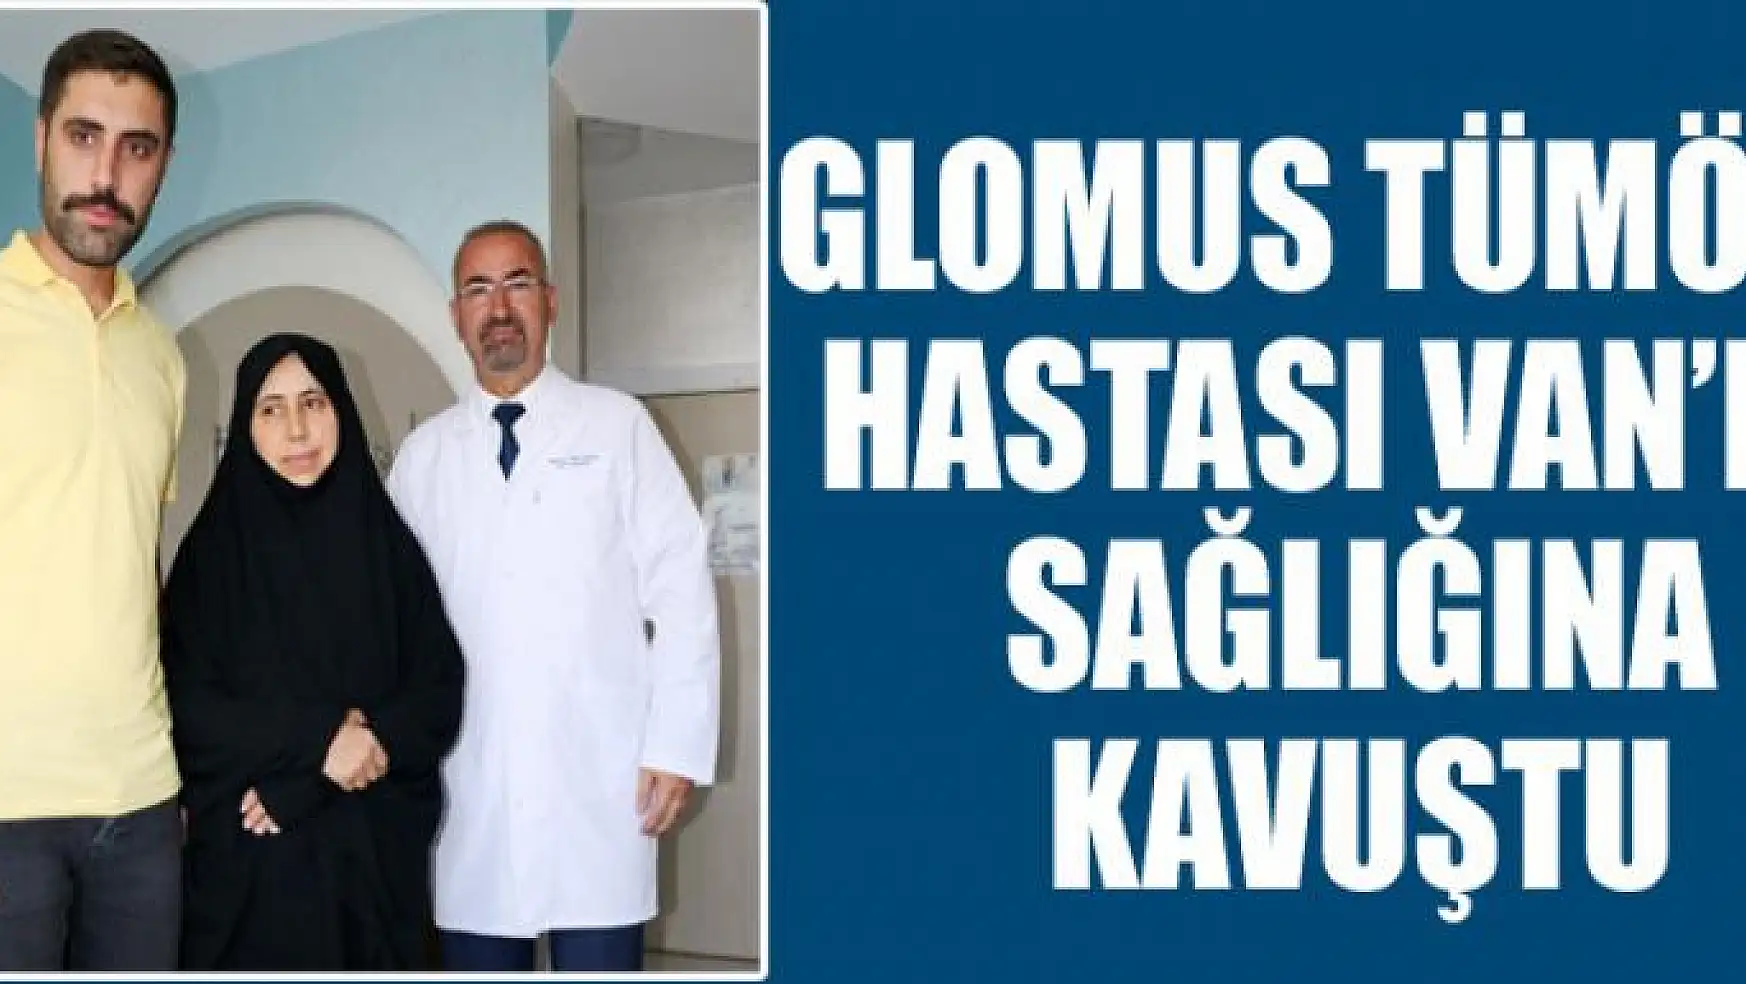 Glomus tümörü hastası Van'da sağlığına kavuştu